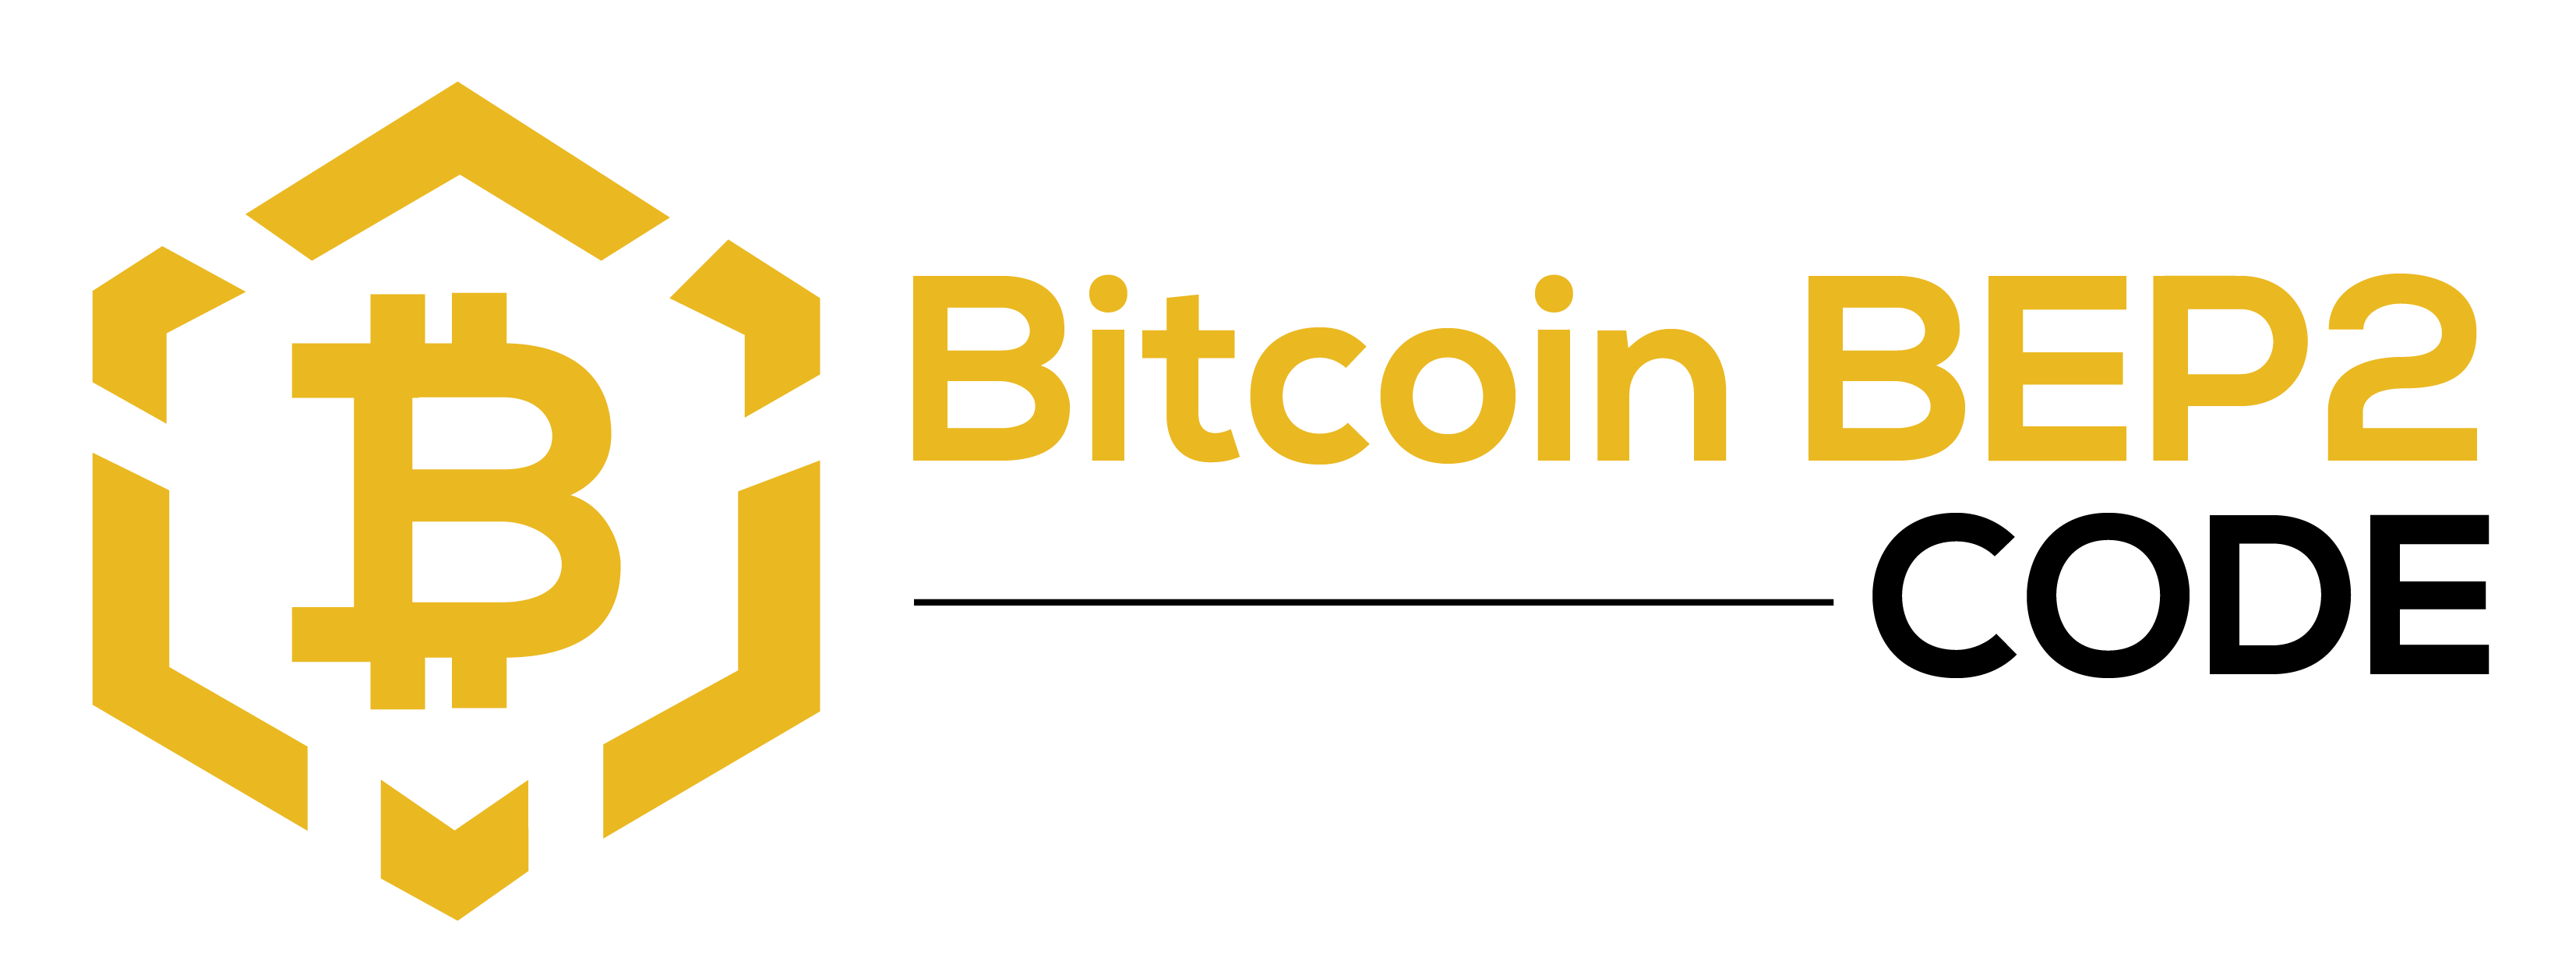 Bitcoin BEP2 Code - Ta kontakt med oss